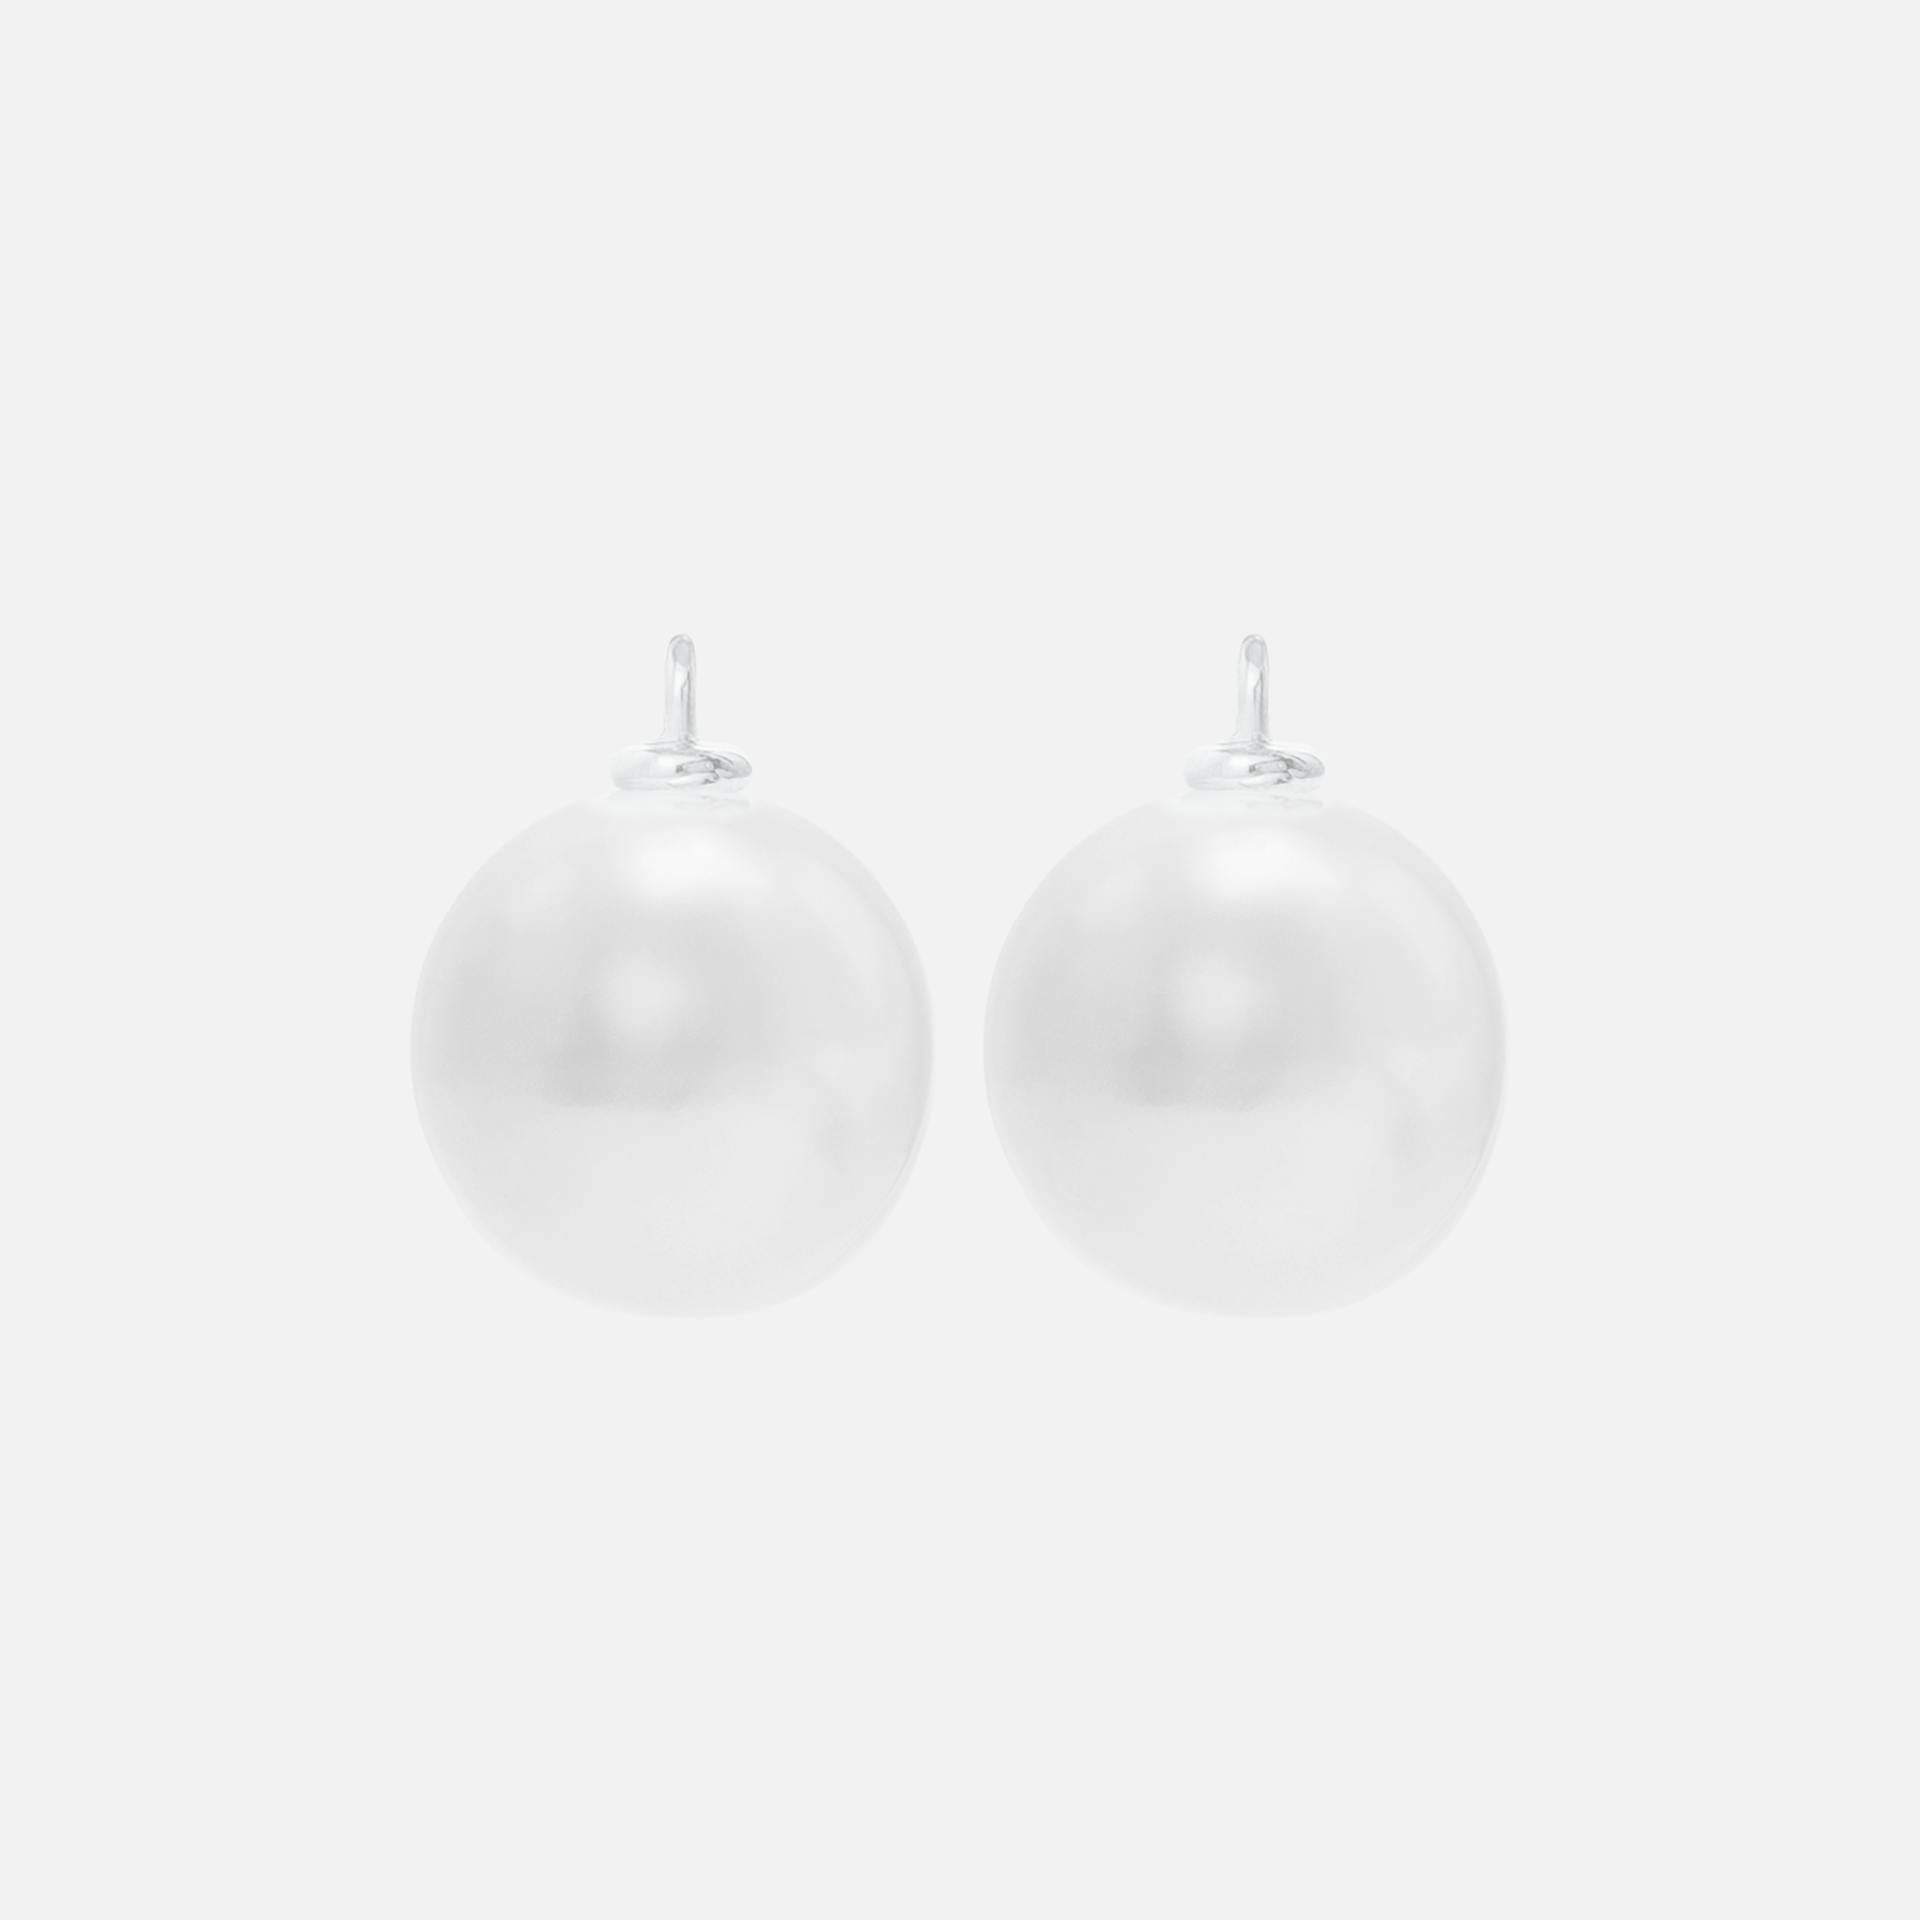 Earring Pendants in 18K White Gold with Pearls  |  Ole Lynggaard Copenhagen 